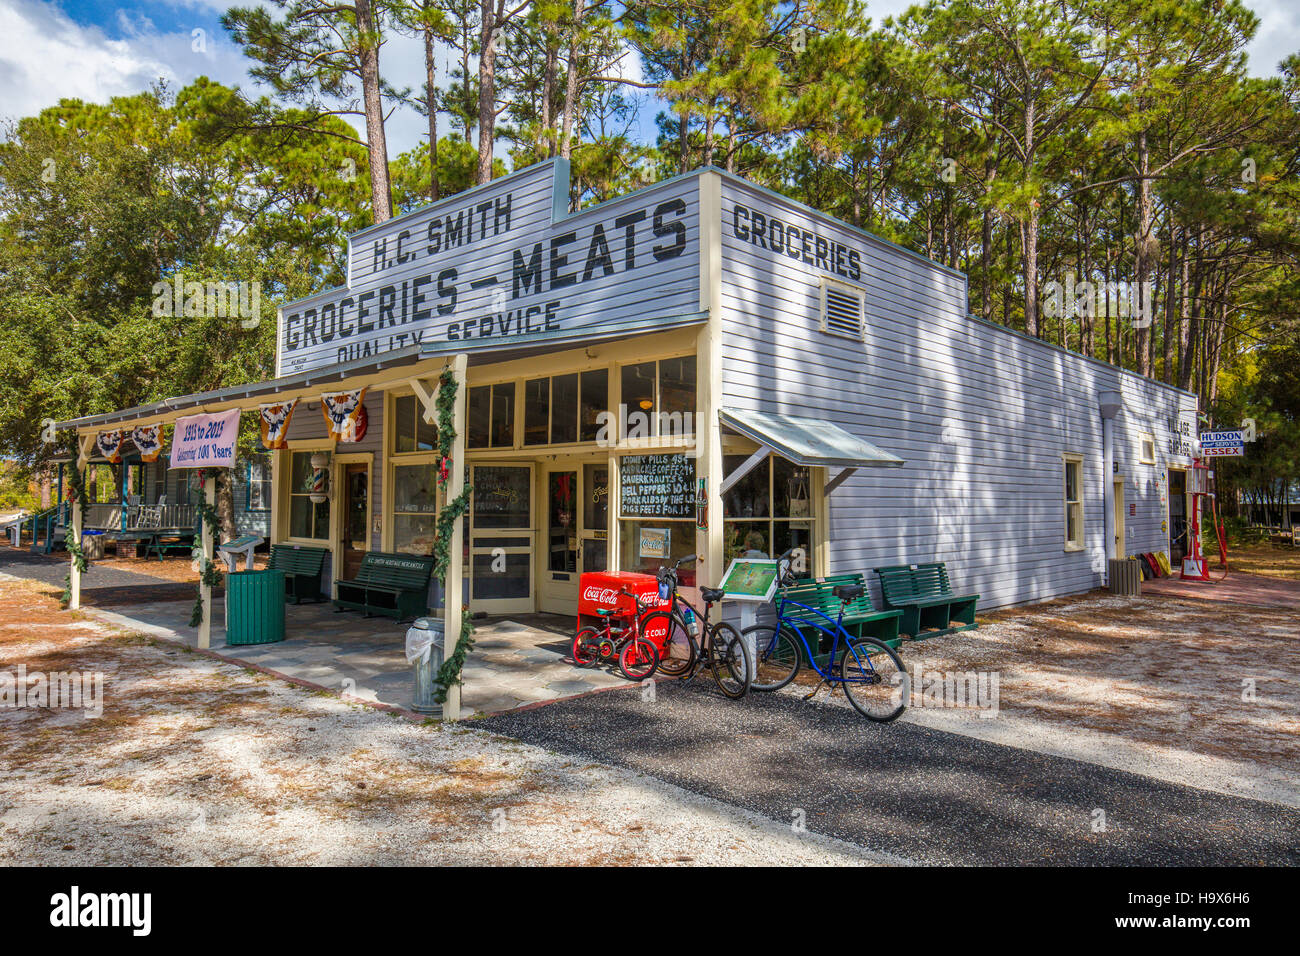 H C Smith magasin général à la vieille ville historique de Heritage Village de Pinellas Comté de Largo en Floride Banque D'Images